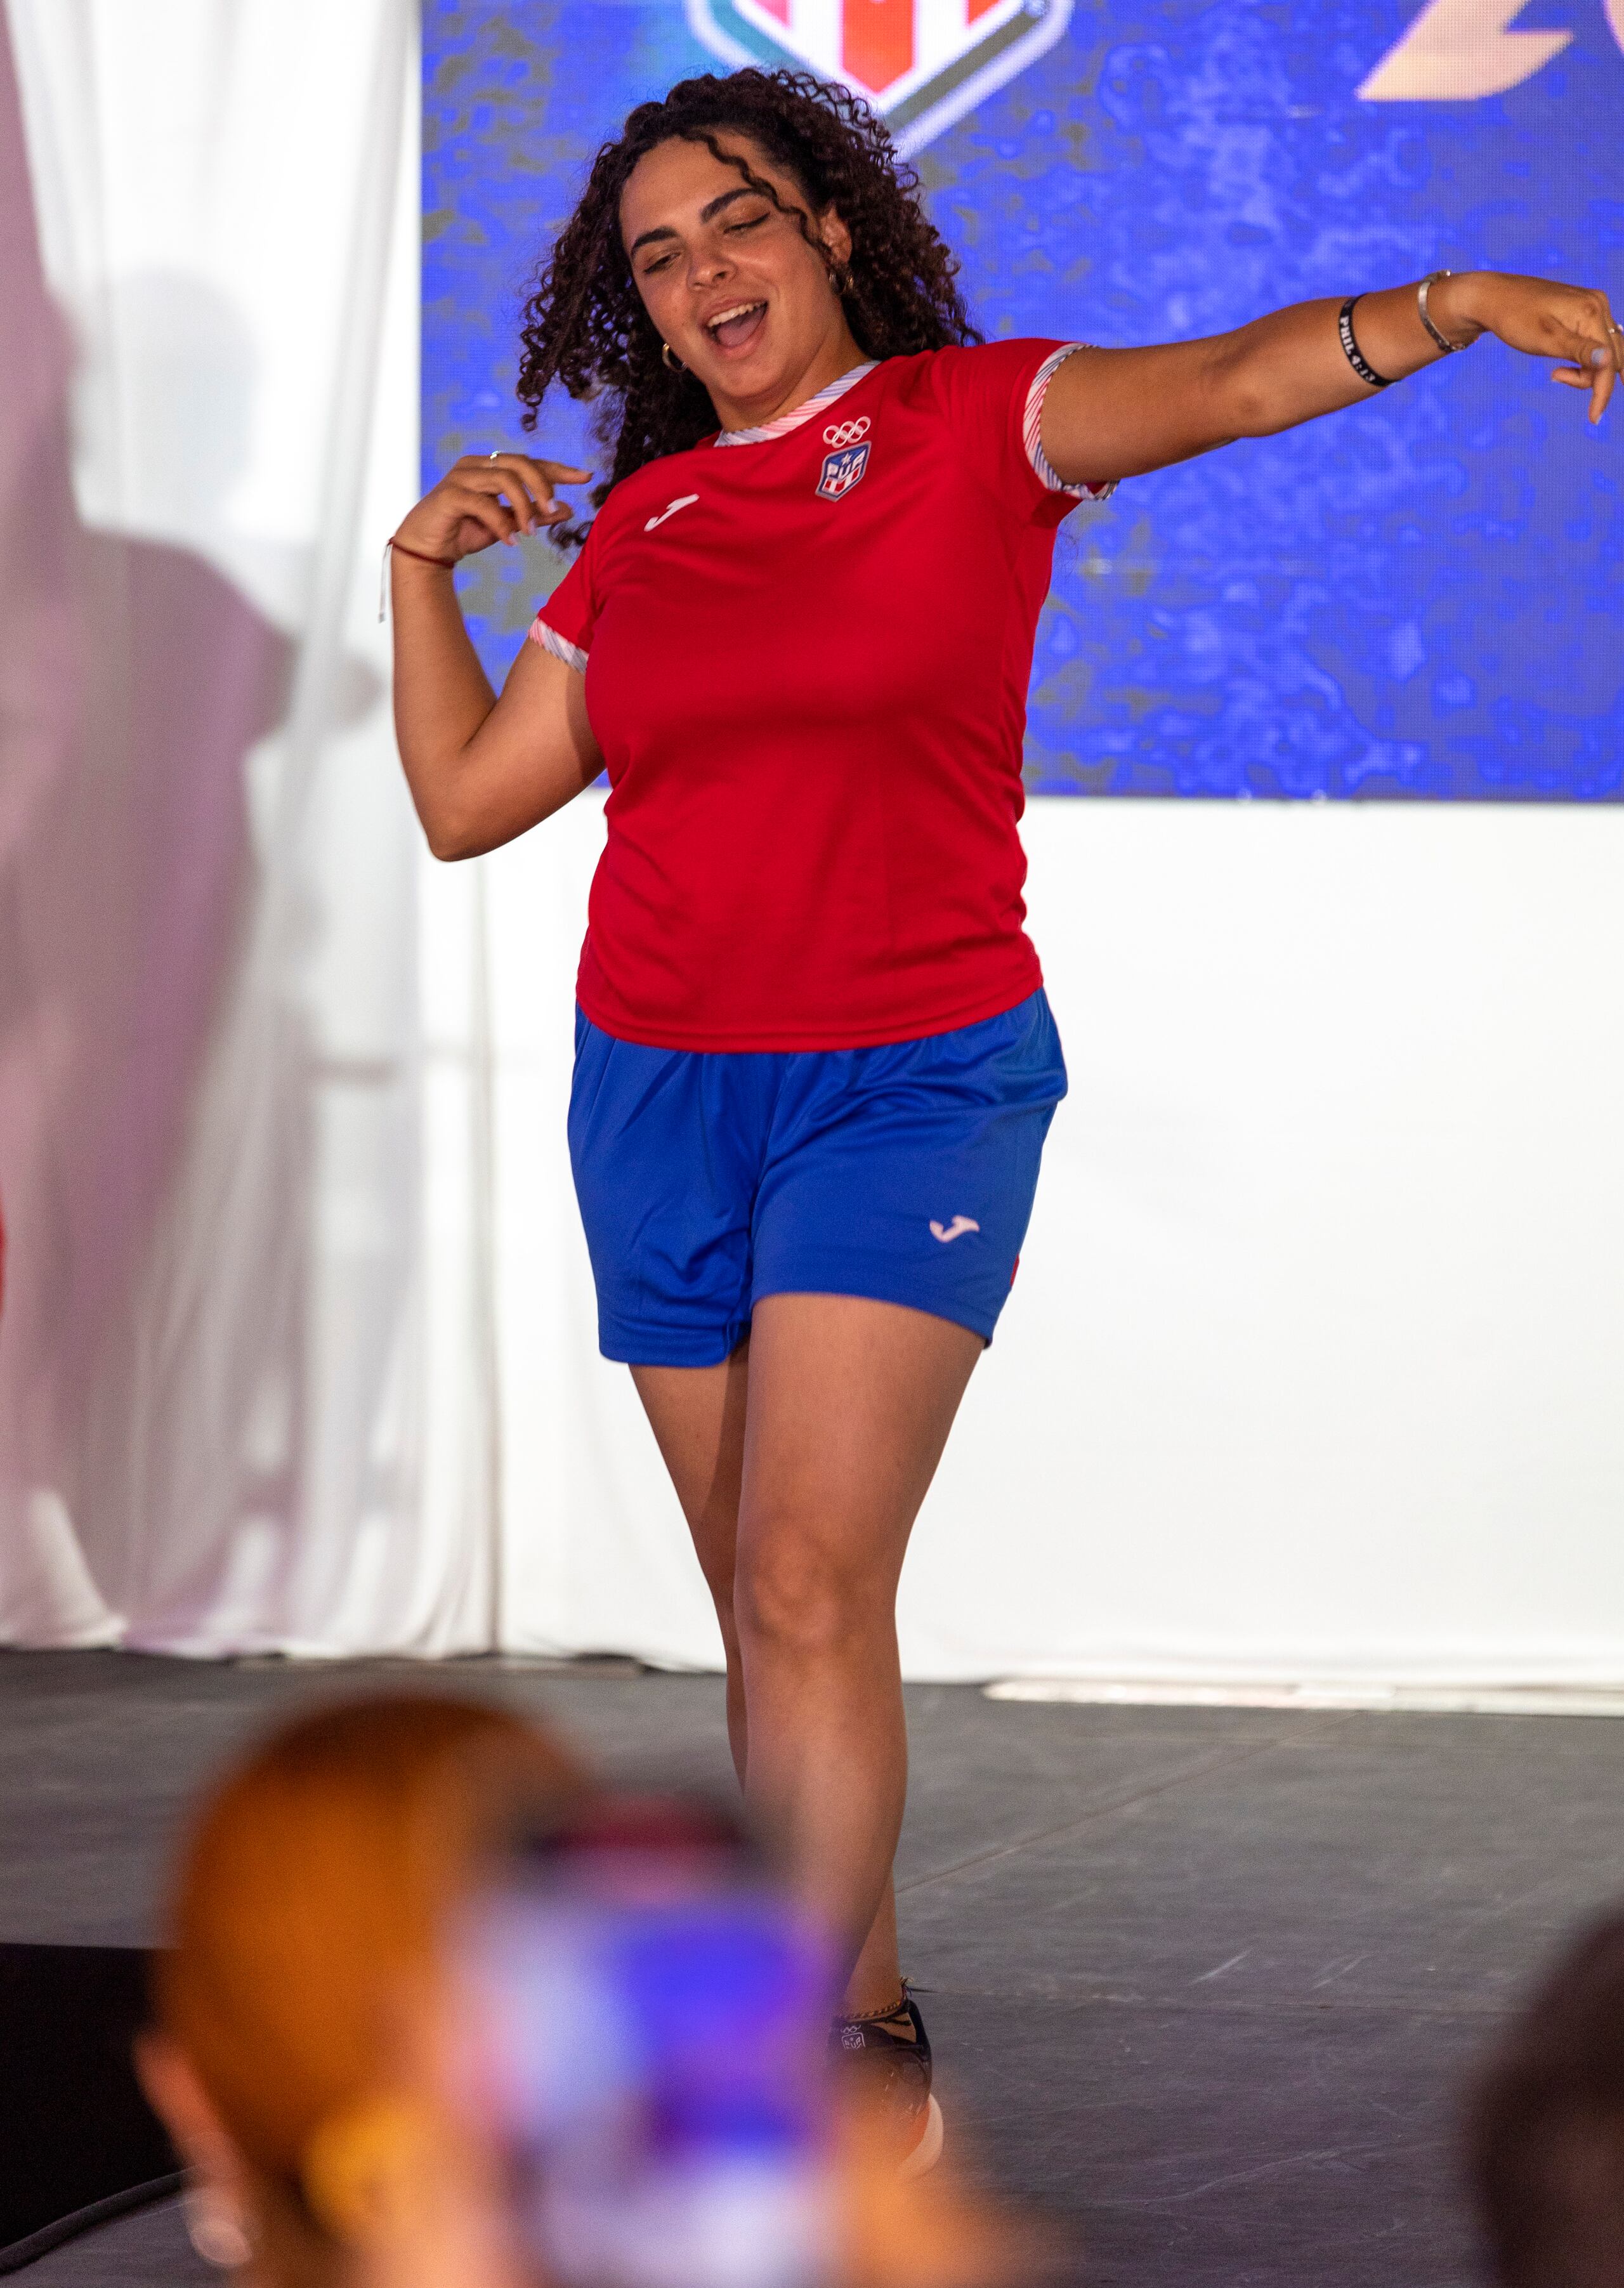 La arquera Alondra Rivera hace el gesto de su deporte durante el desfile de la vestimenta casual que llevará la delegación de Puerto Rico en París 2024.